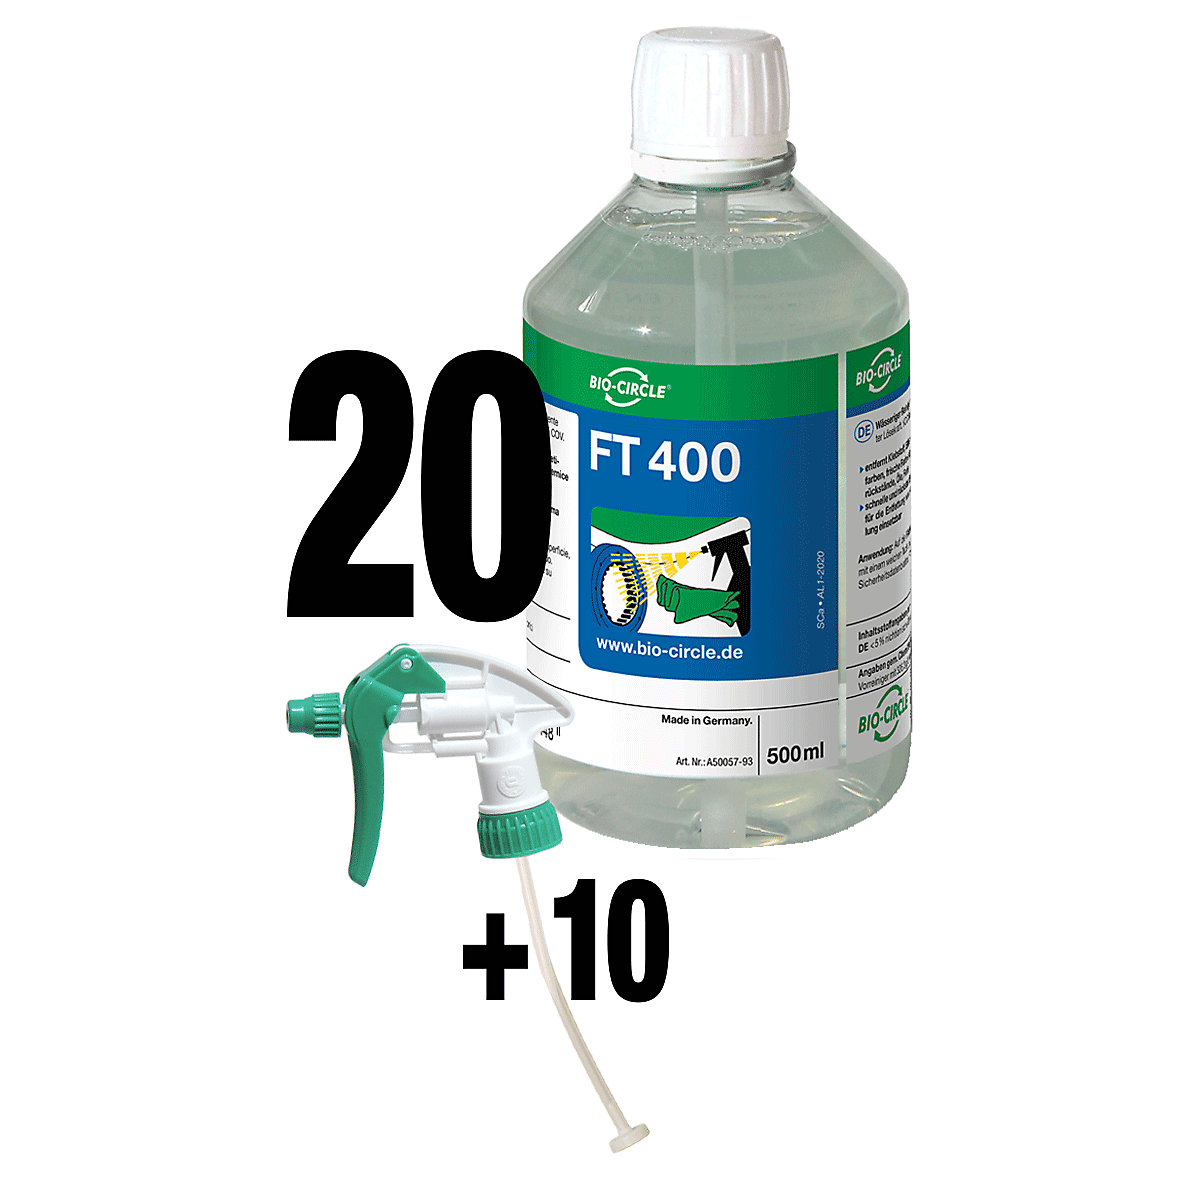 FT 400 cleaner - Bio-Circle